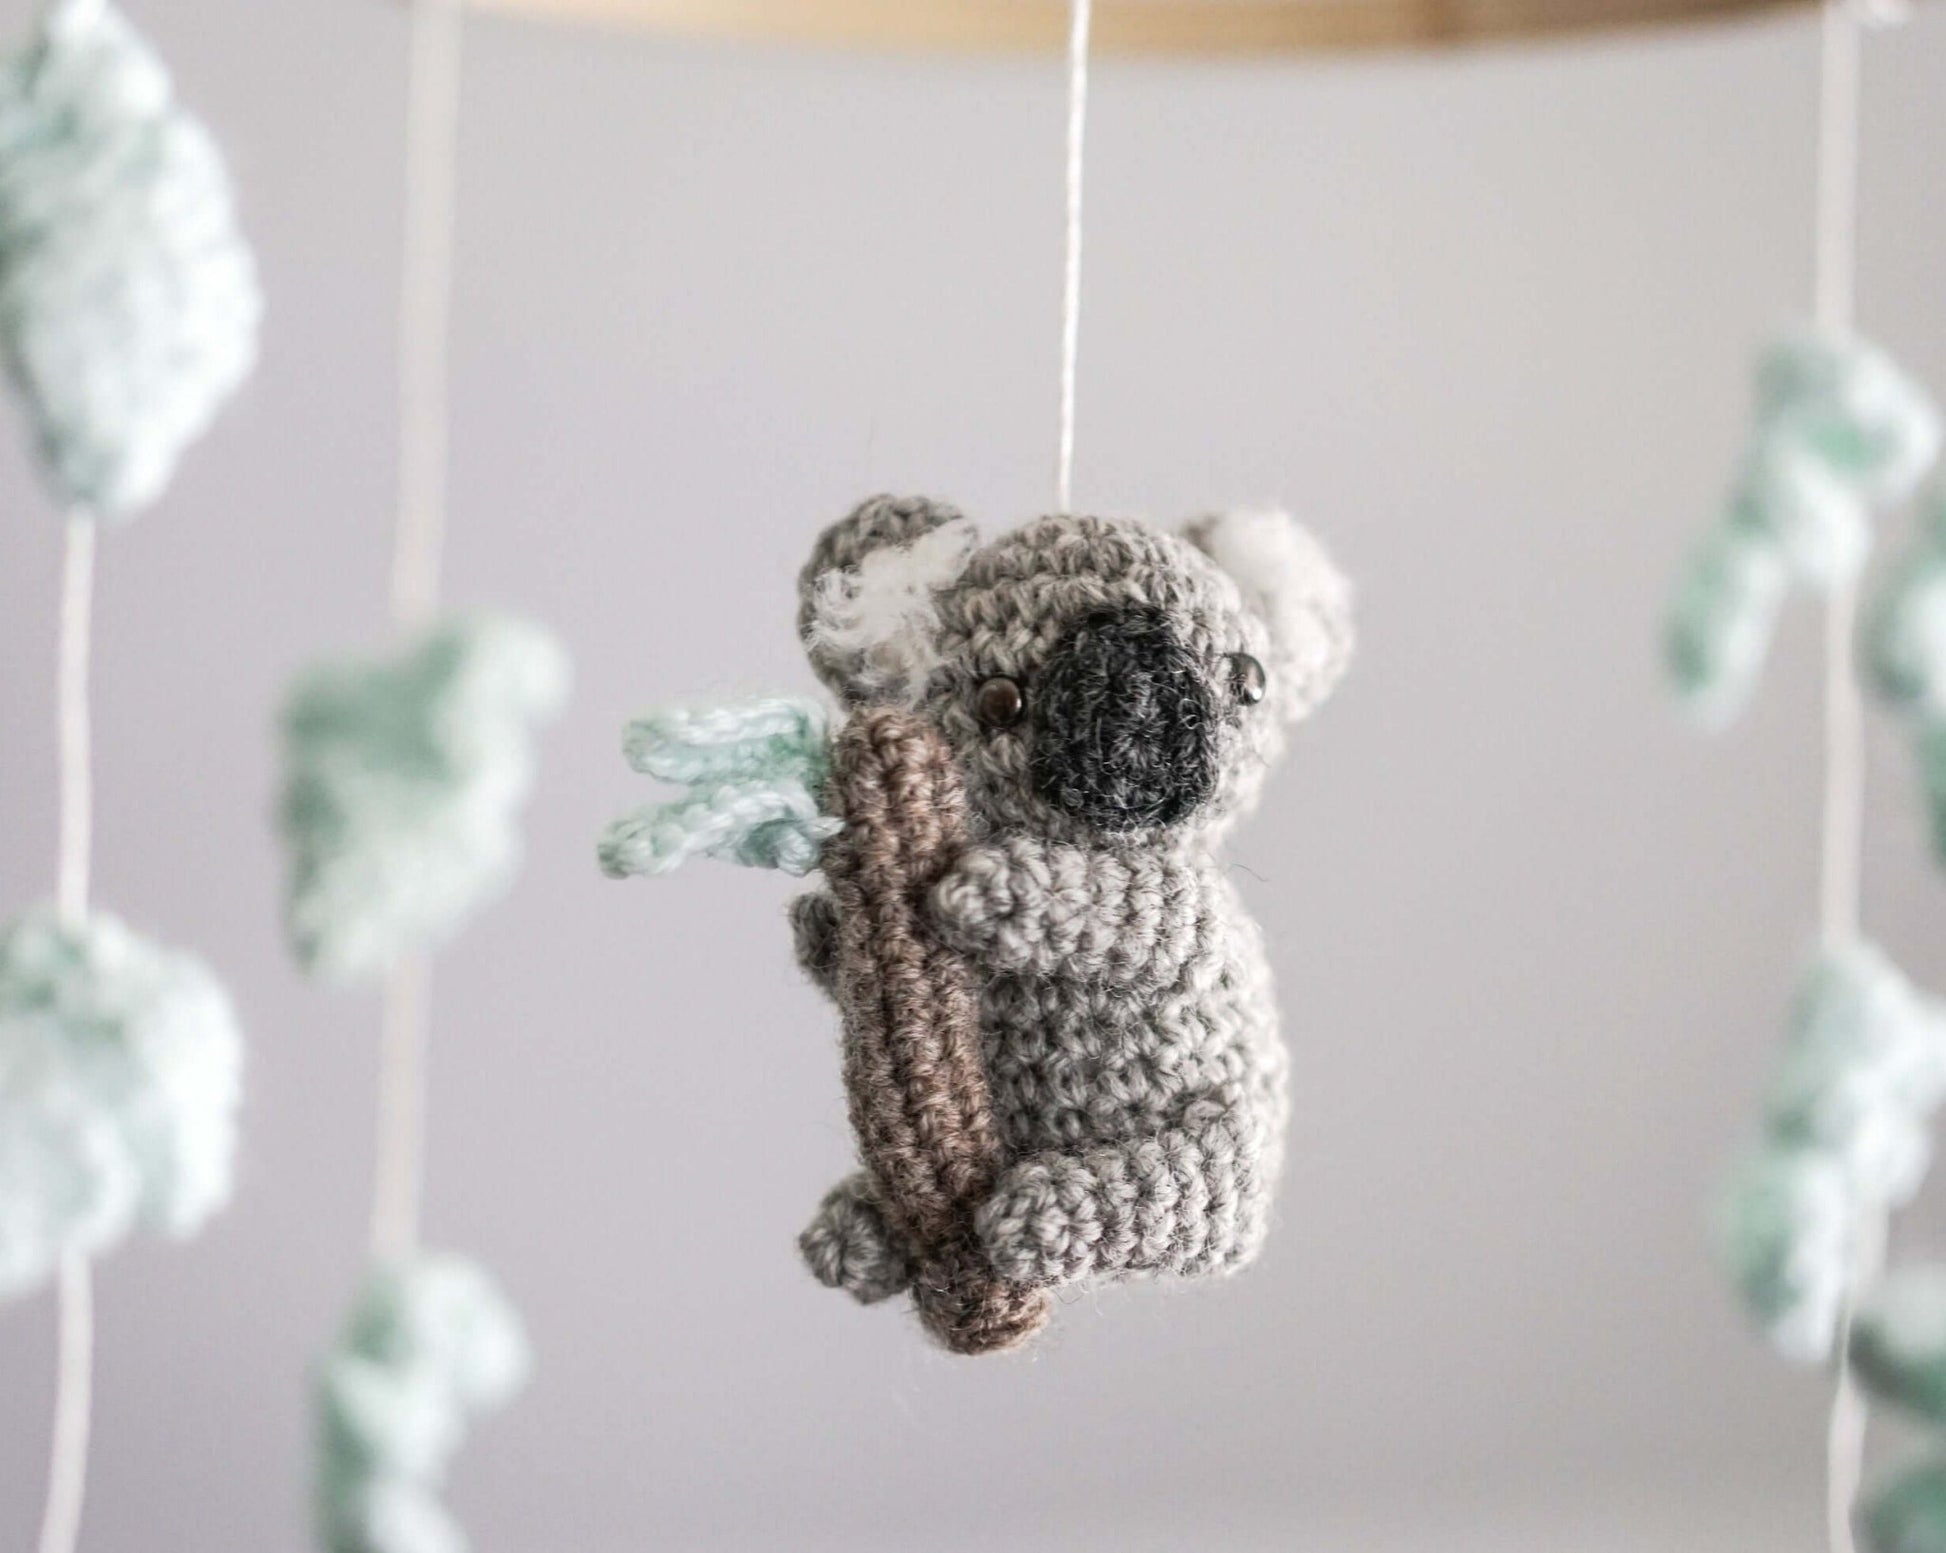 Patron au crochet - Un koala dans l'arbre - Crochetmilie